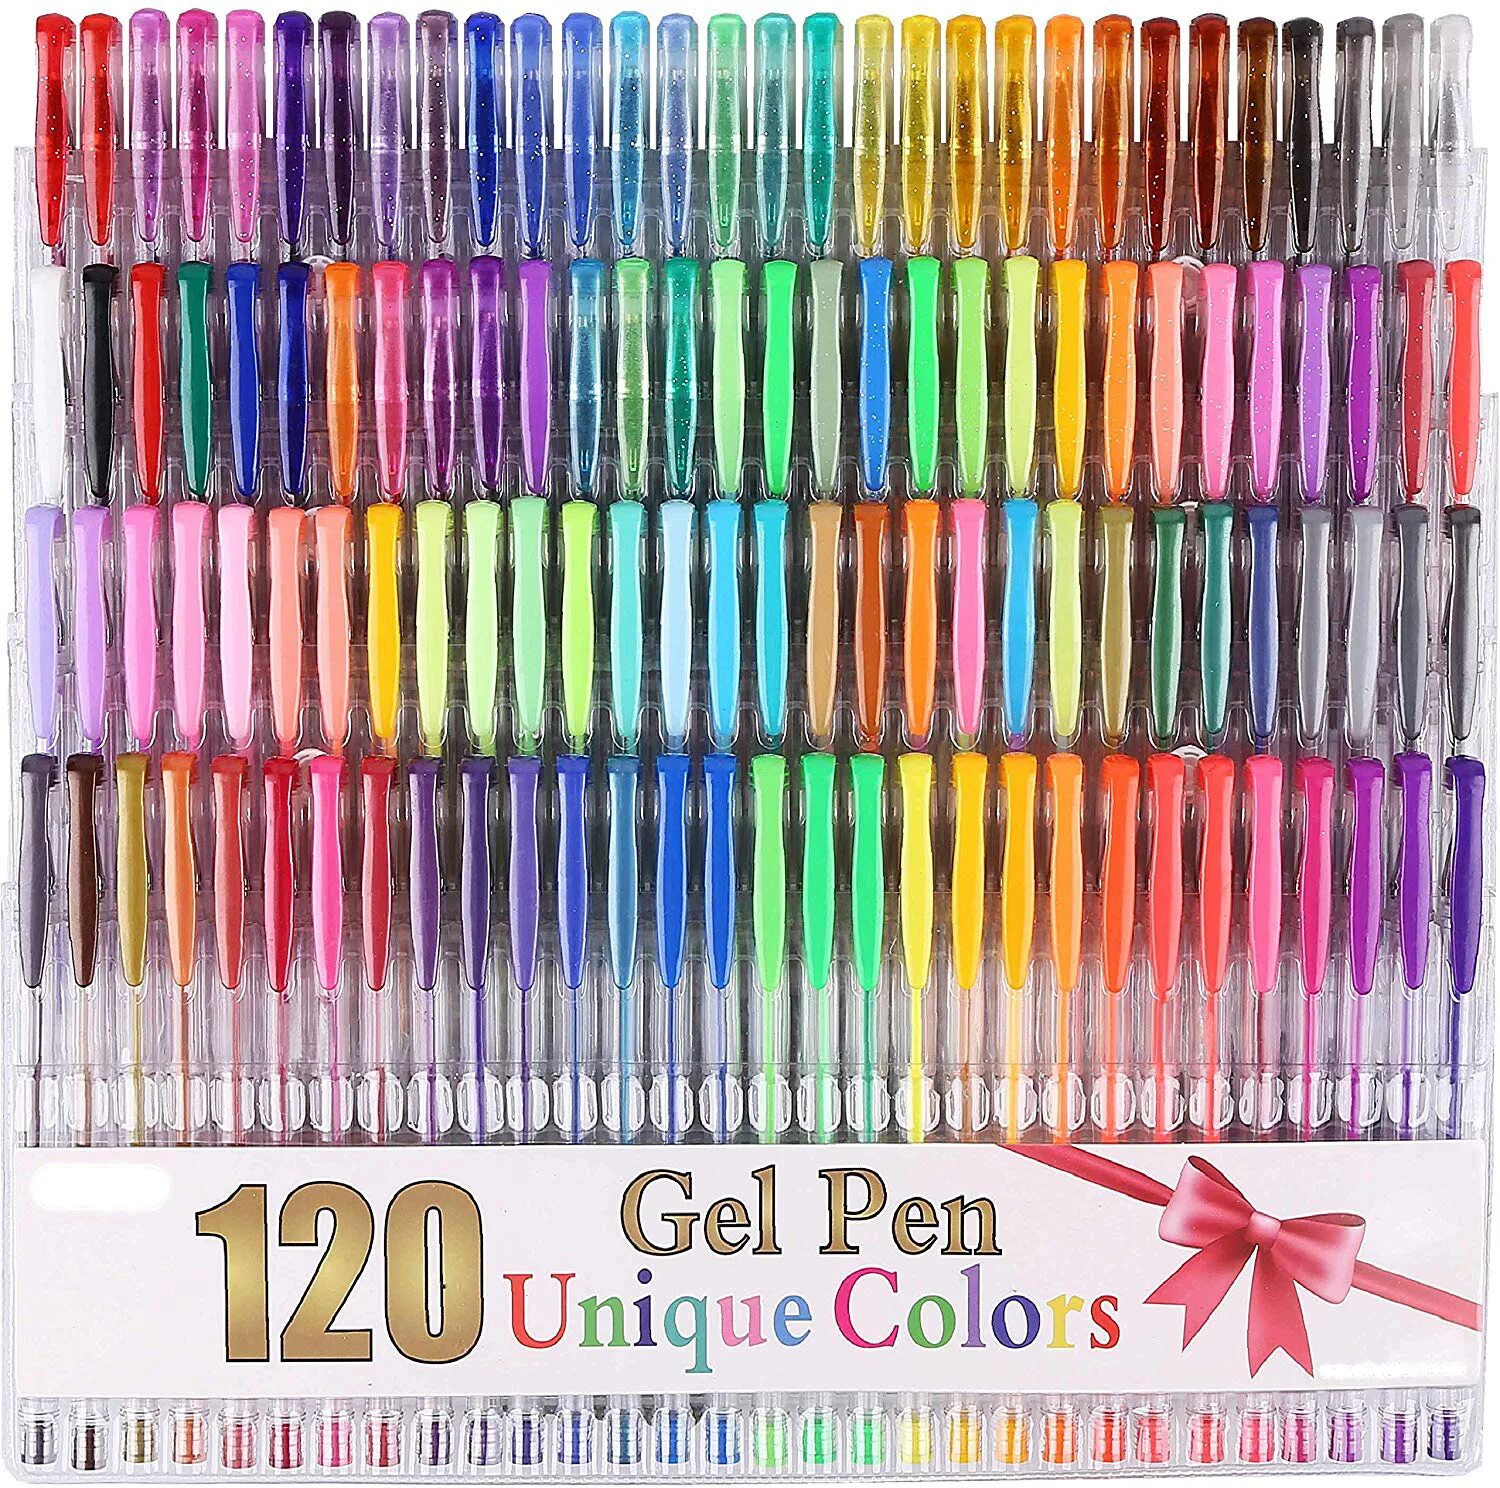 Набор гелевых ручек. Набор ARTSPACE гелевых ручек. Набор гелевых ручек Xiaomi Rainbow Gel Pen 5 Colors mjzxb03wc. Набор гелевых ручек 100 цветов. Набор гелевых ручек 120 цветов.